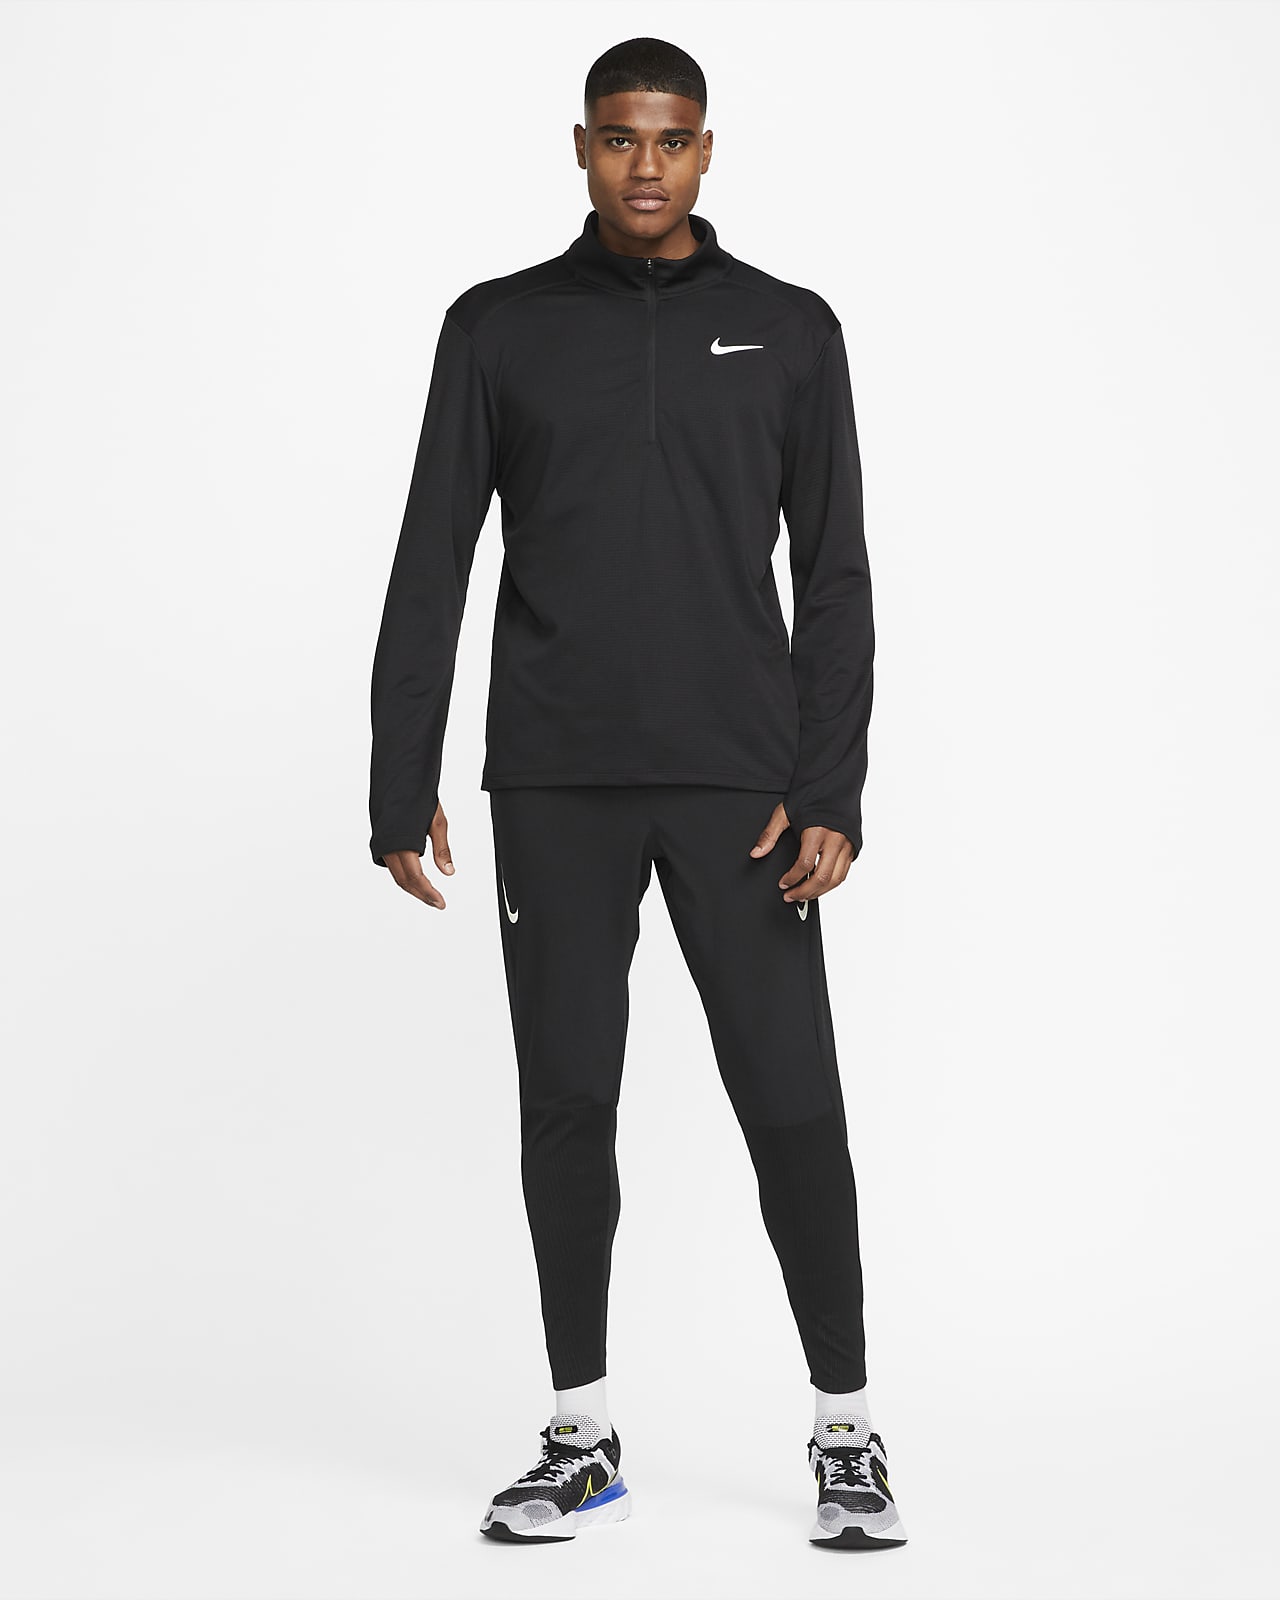 Nike Pacer Men's 1/2-Zip Running Top 